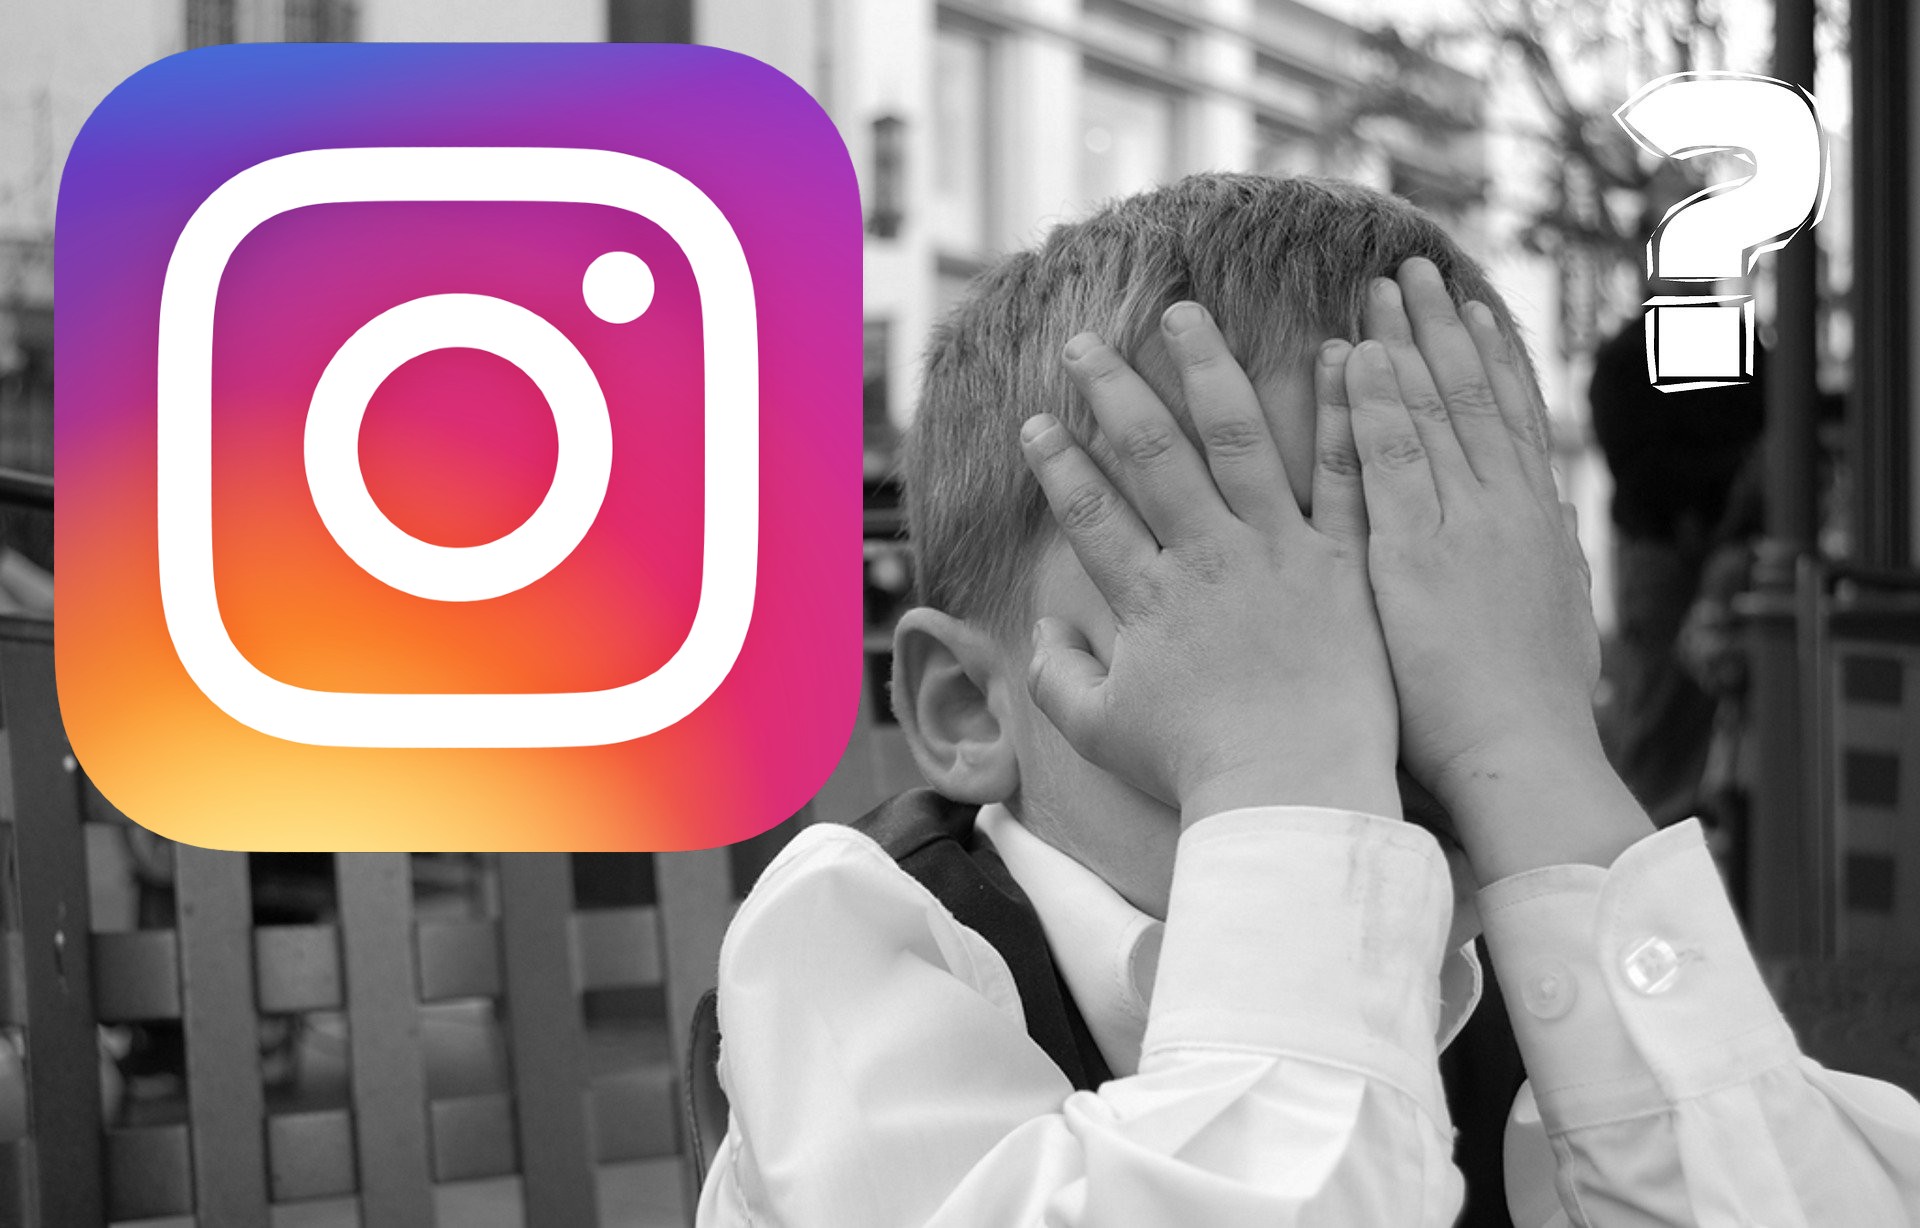 Error al cargar fotos en Instagram, 8 soluciones